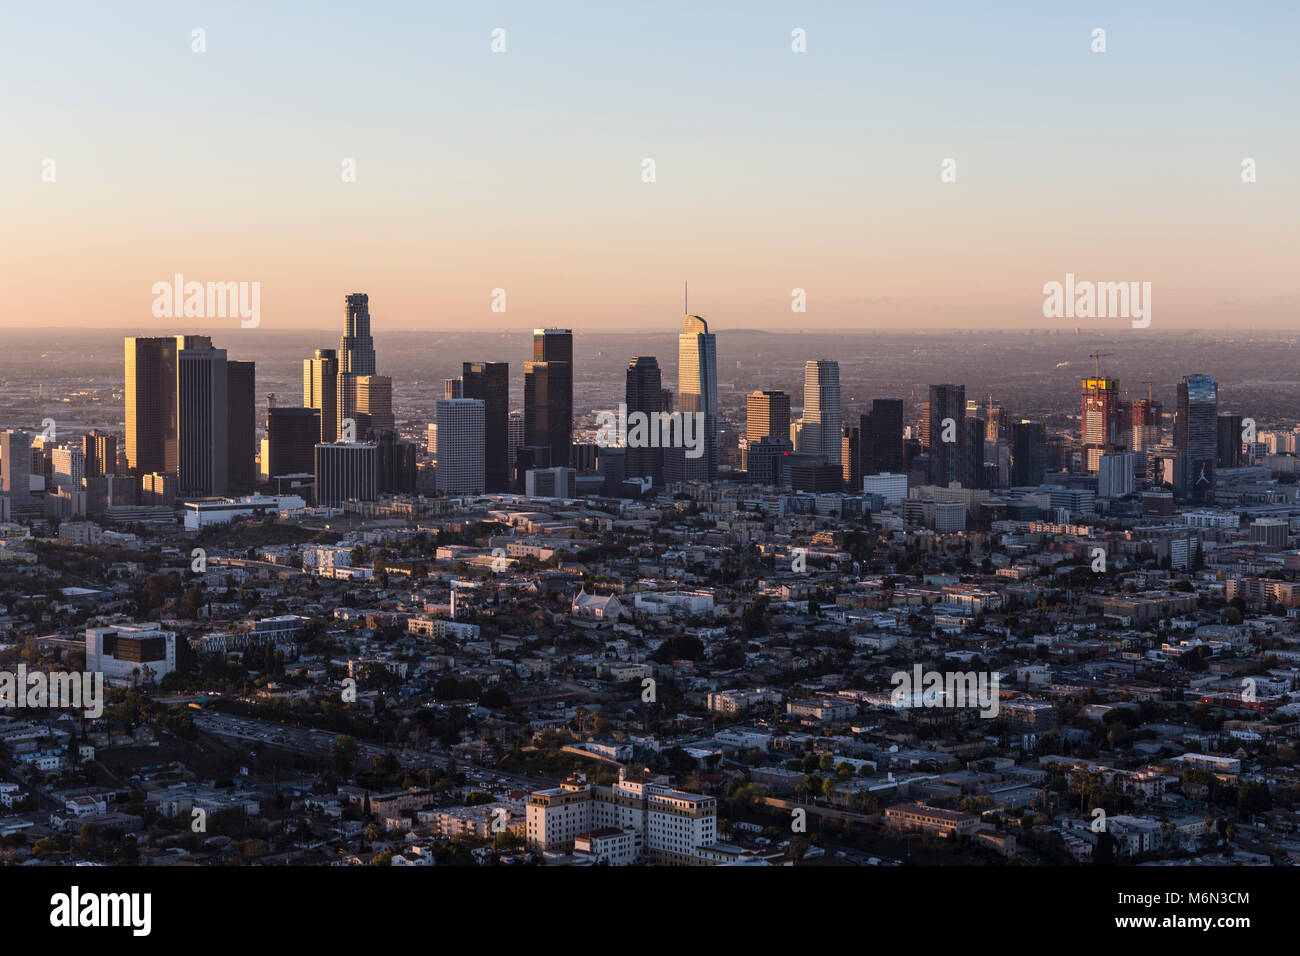 Los Angeles, California, Stati Uniti d'America - 20 Febbraio 2018: la mattina presto vista aerea del centro di Los Angeles cityscape urban skyline. Foto Stock